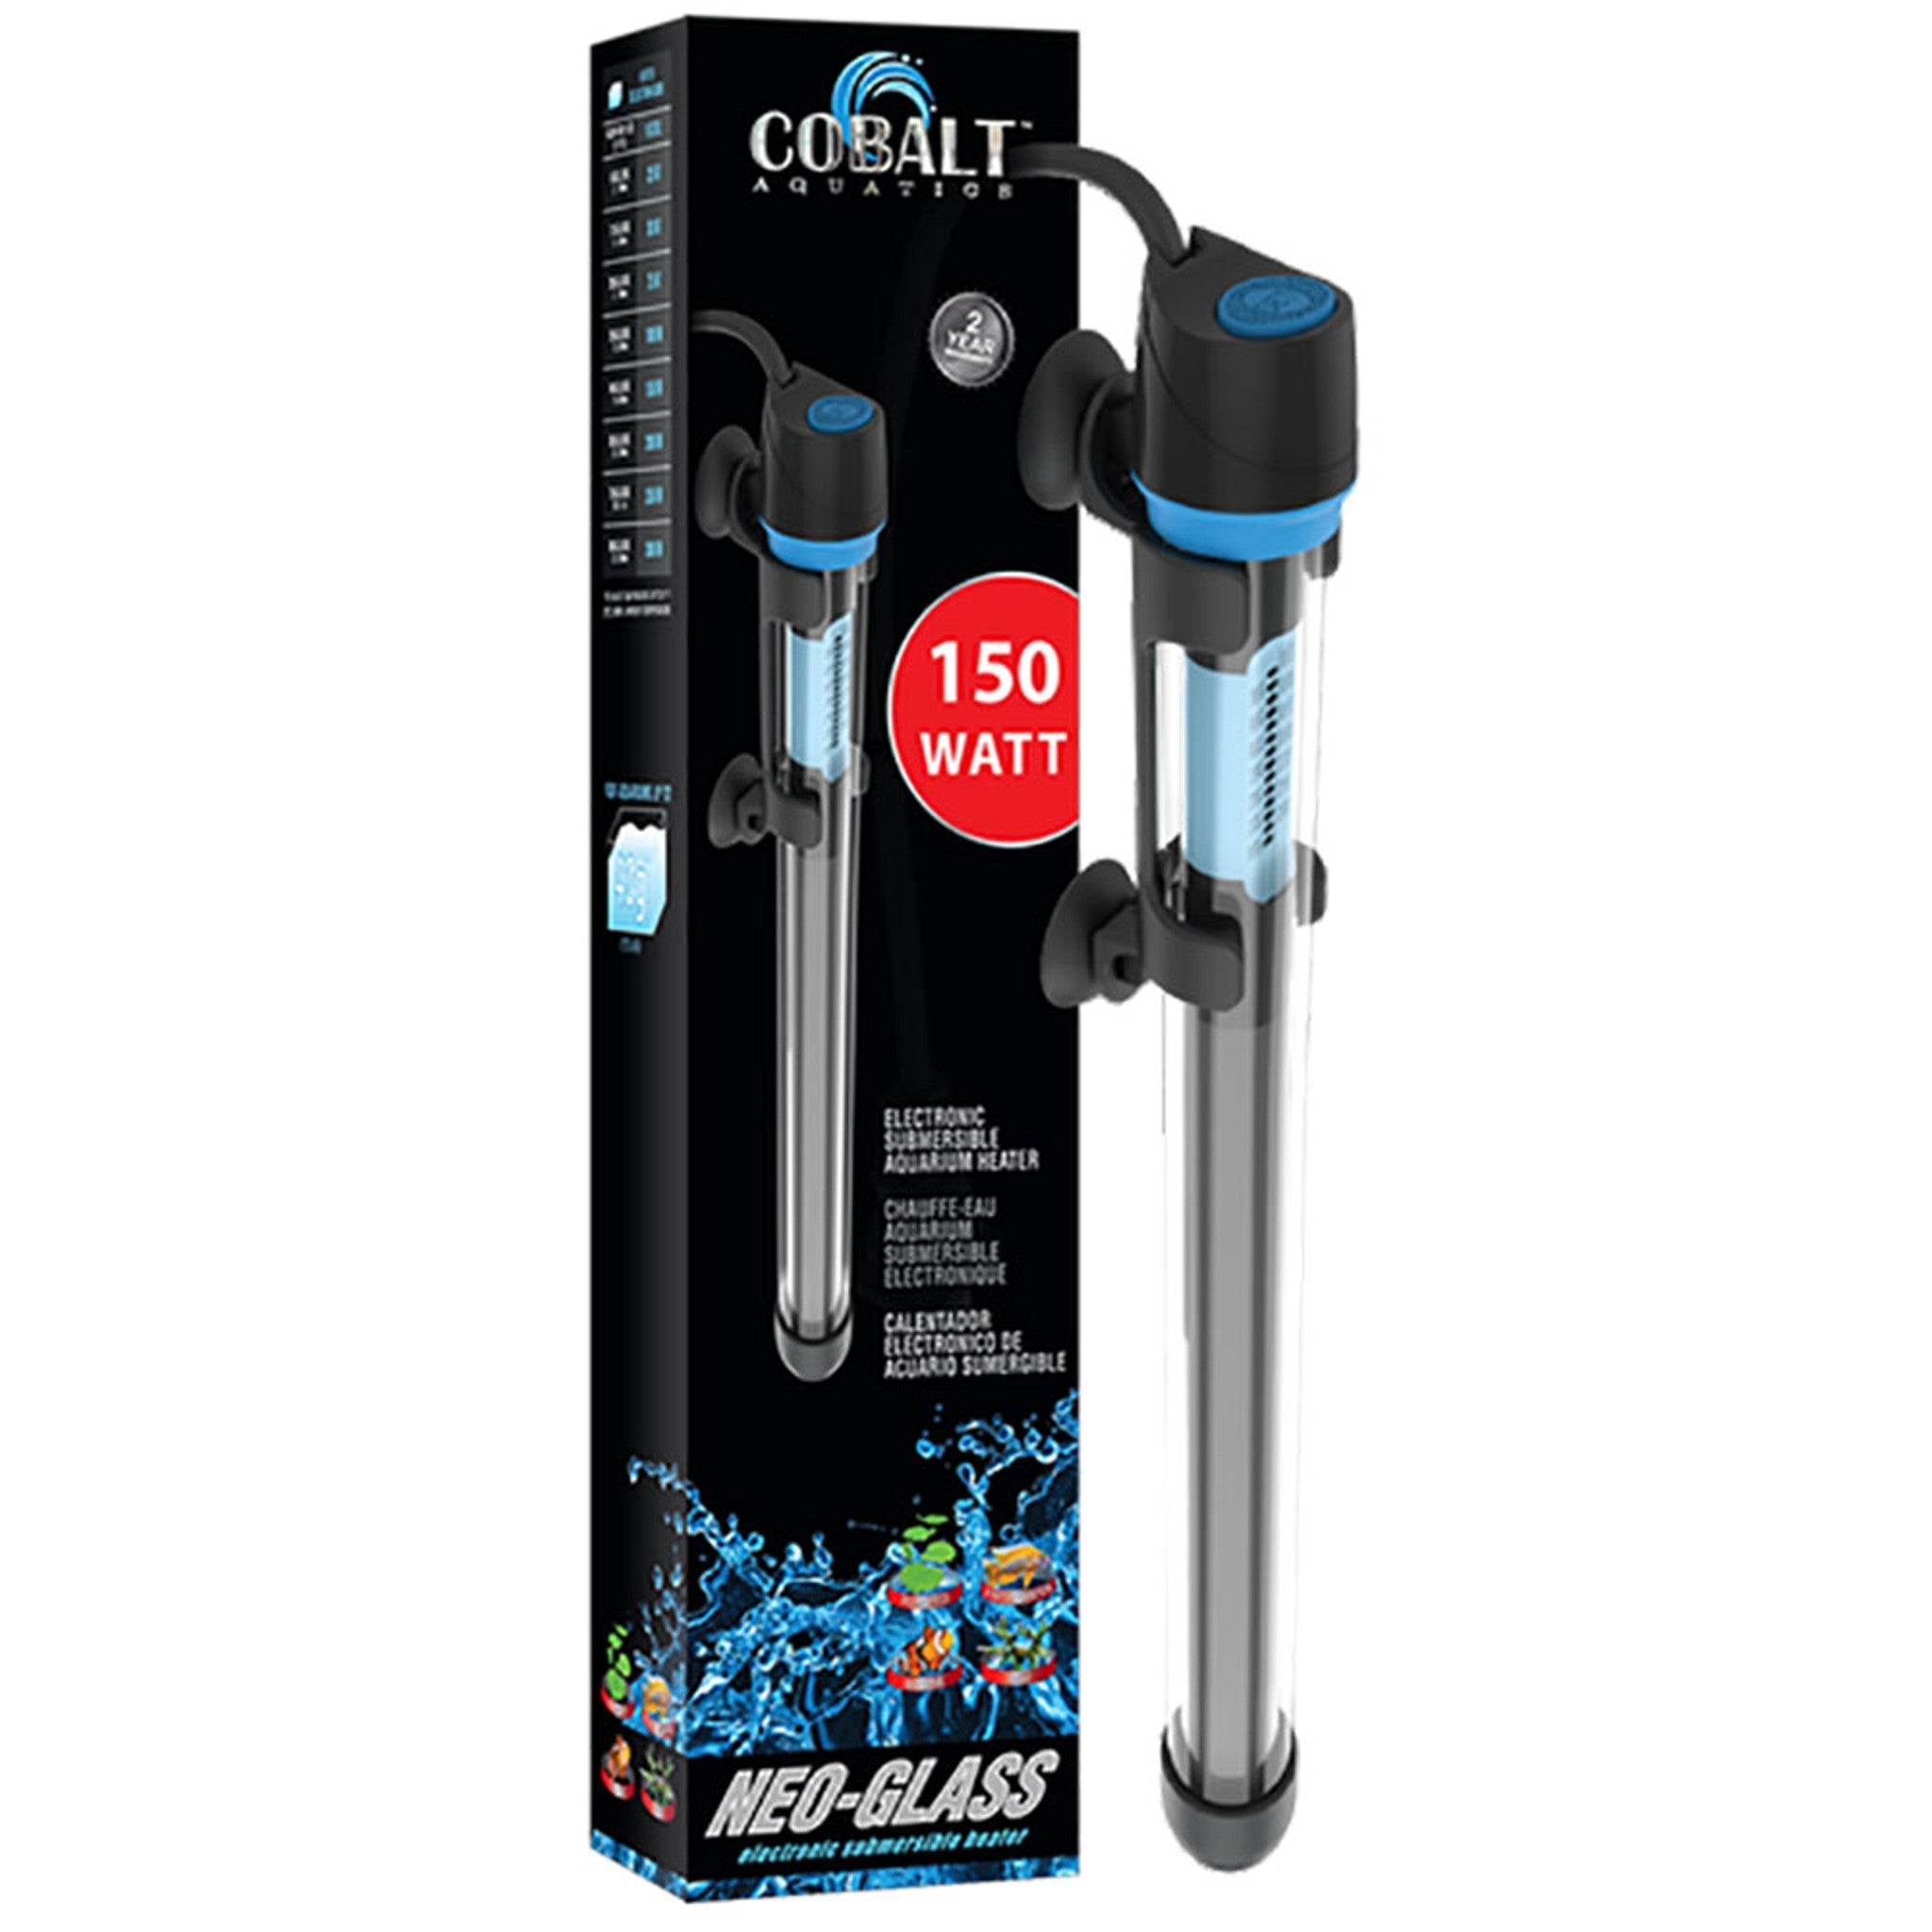 Cobalt Neo-Glass Submersible Aquarium Heater